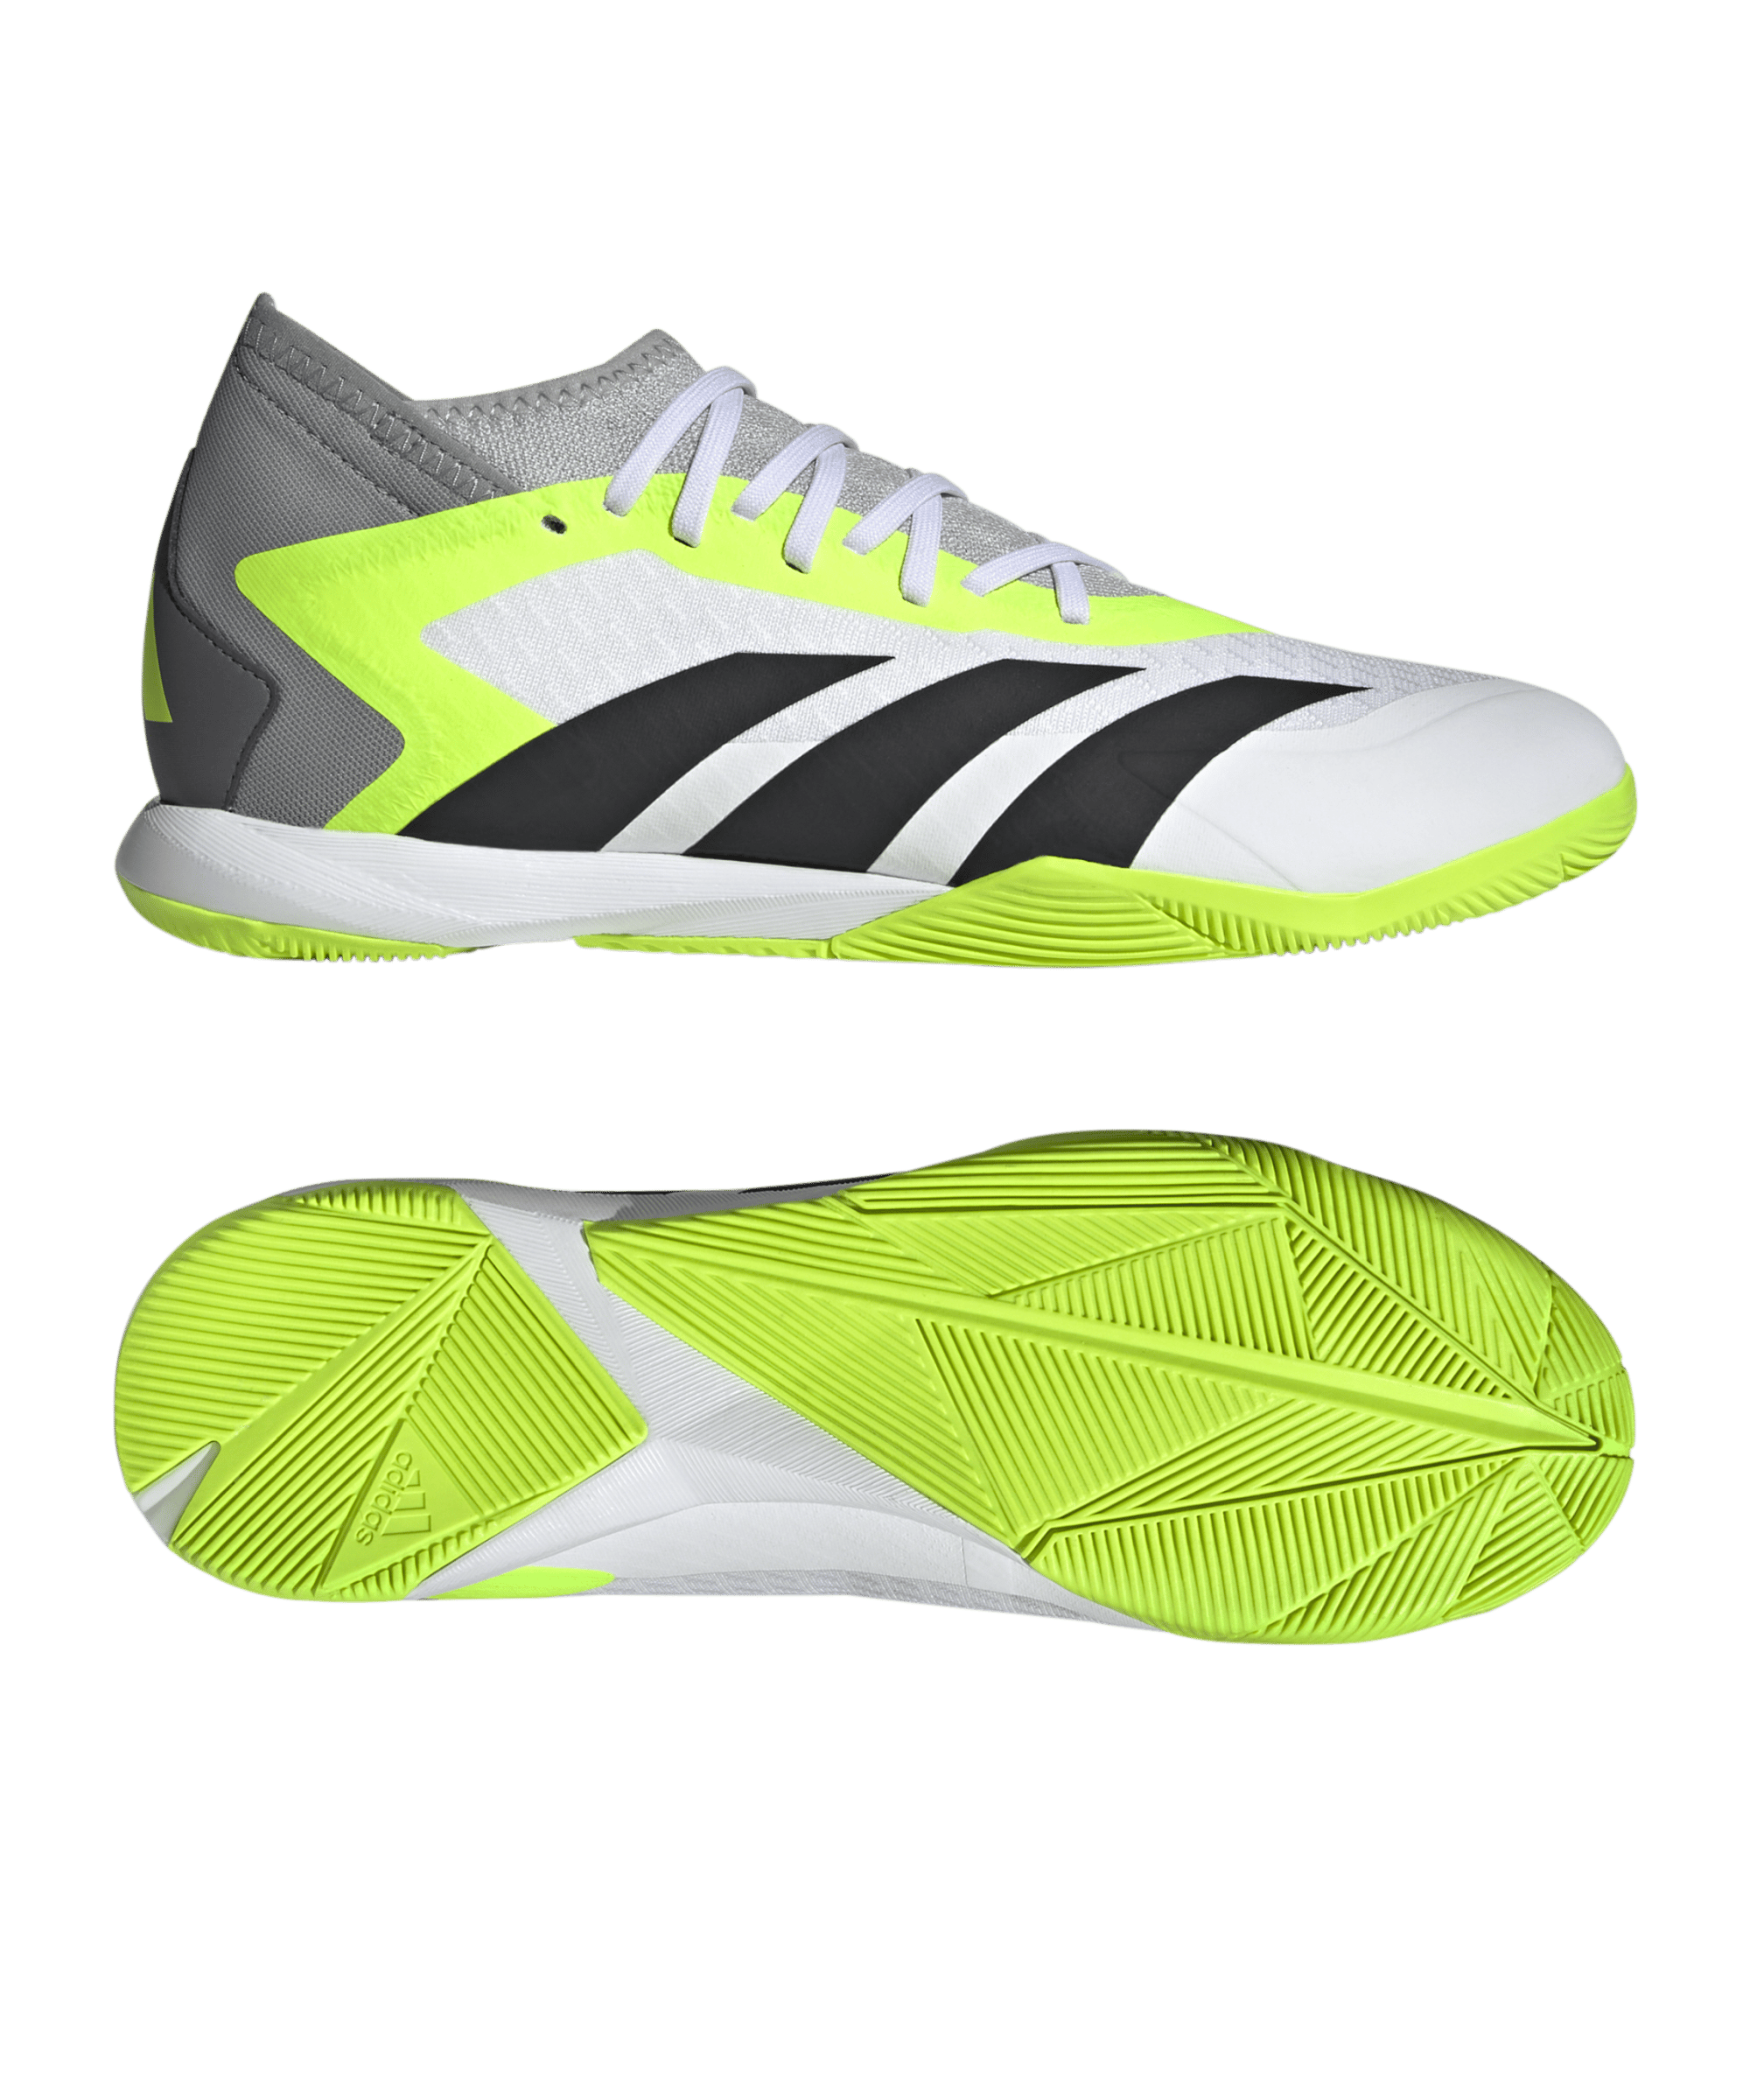 Adidas Fußballschuh Predator Accuracy.3 IN Halle Crazyrush weiß schwarz gelb